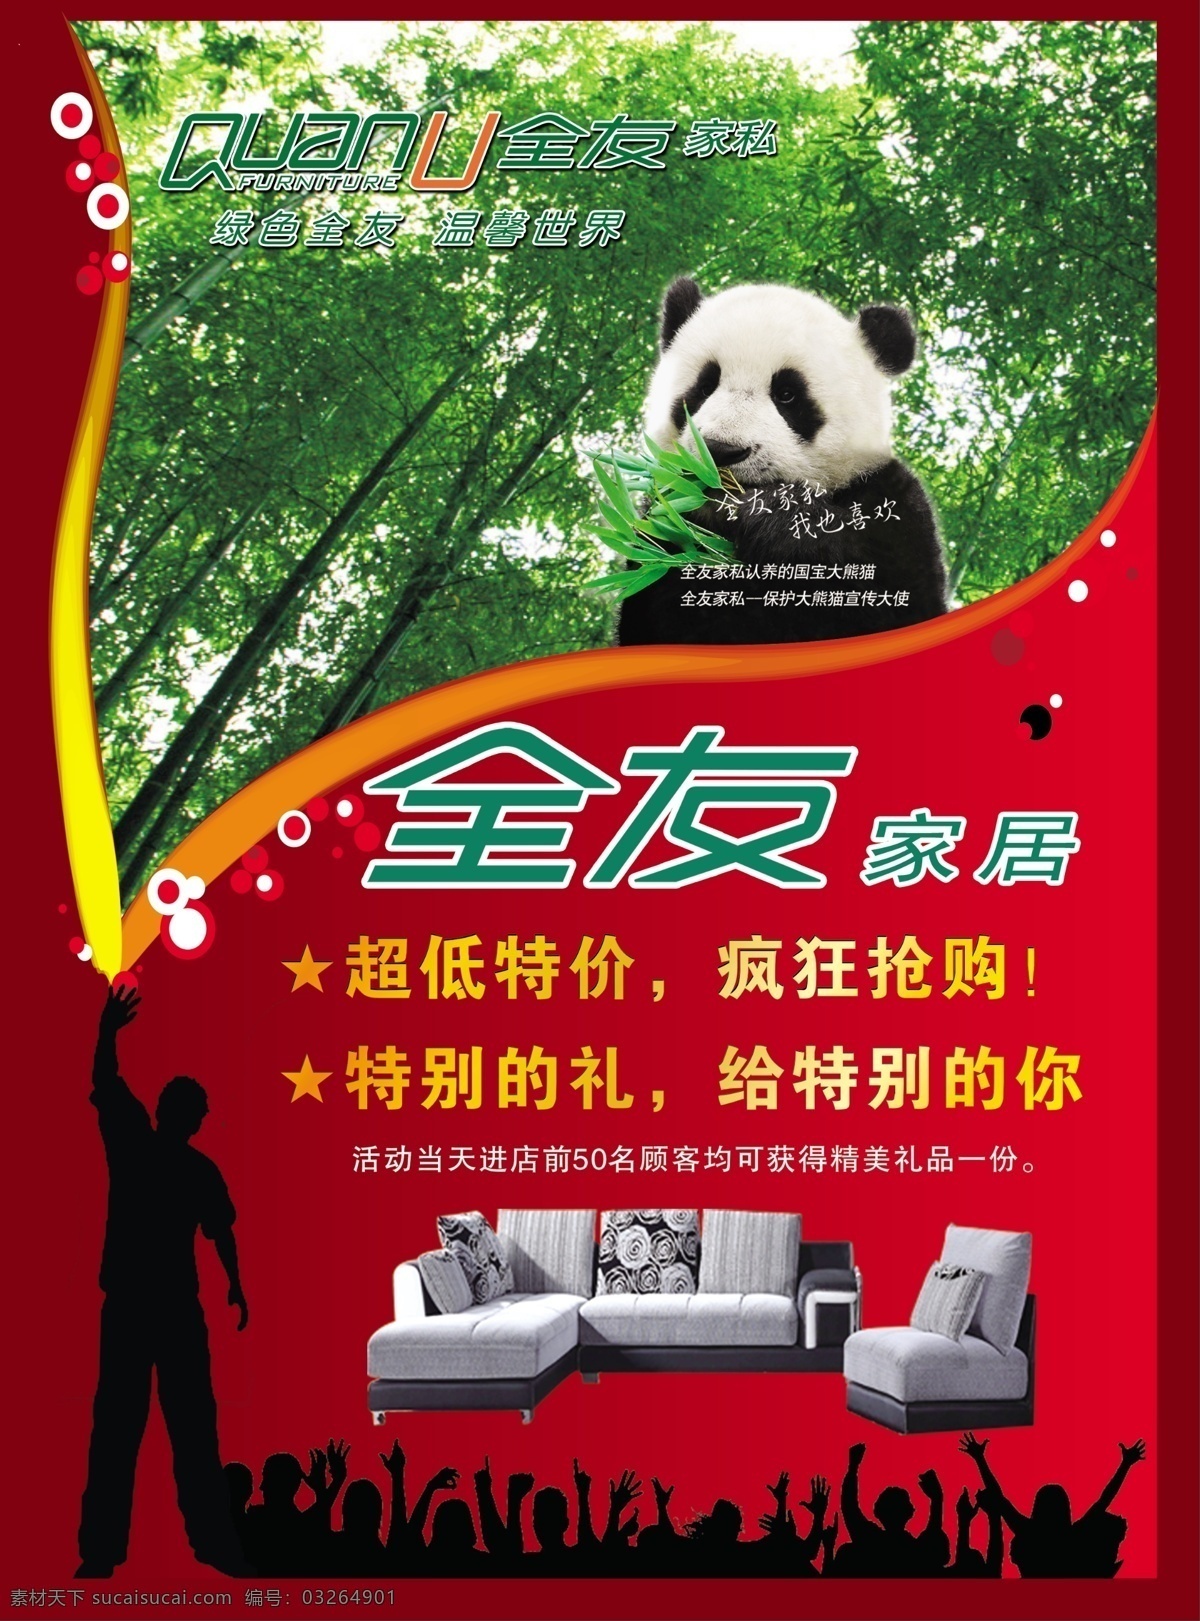 全友家居彩页 全有彩页 红半景 绿林 熊猫 沙发 dm宣传单 广告设计模板 源文件